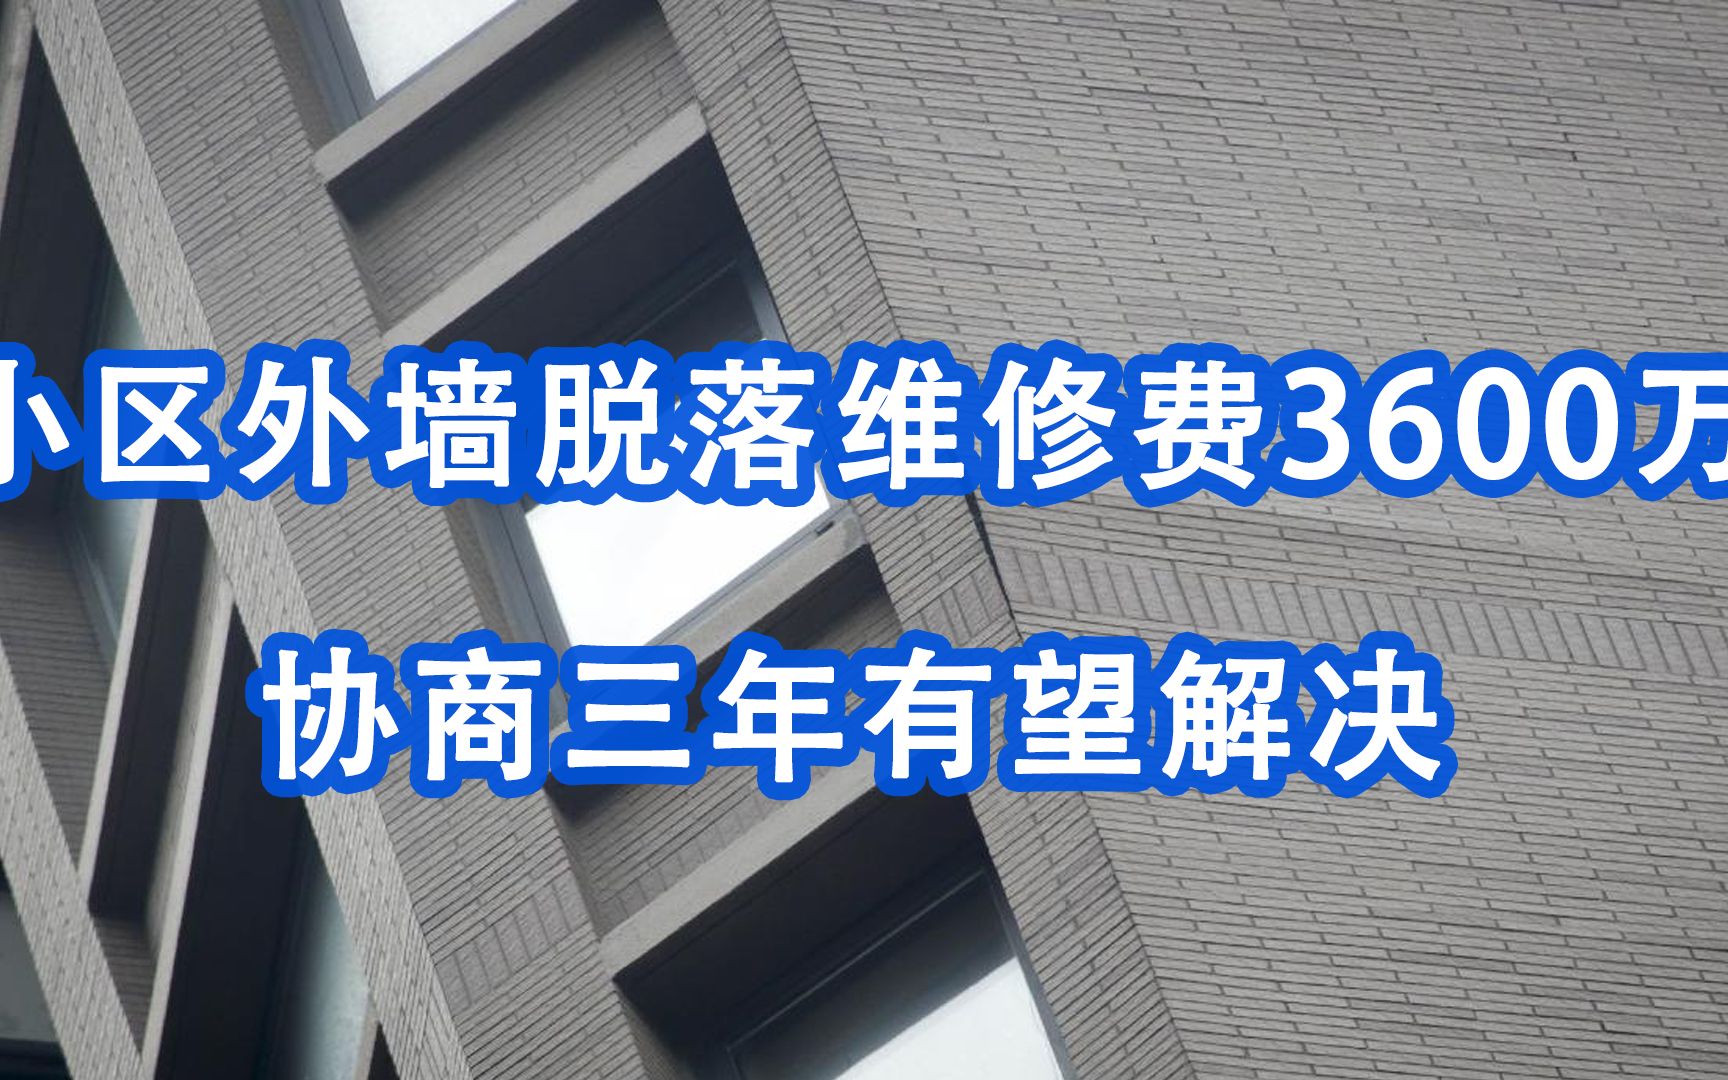 上海一高档小区外墙开裂脱落维修费3600万：协商3年后有望解决，开发商承担总价75%